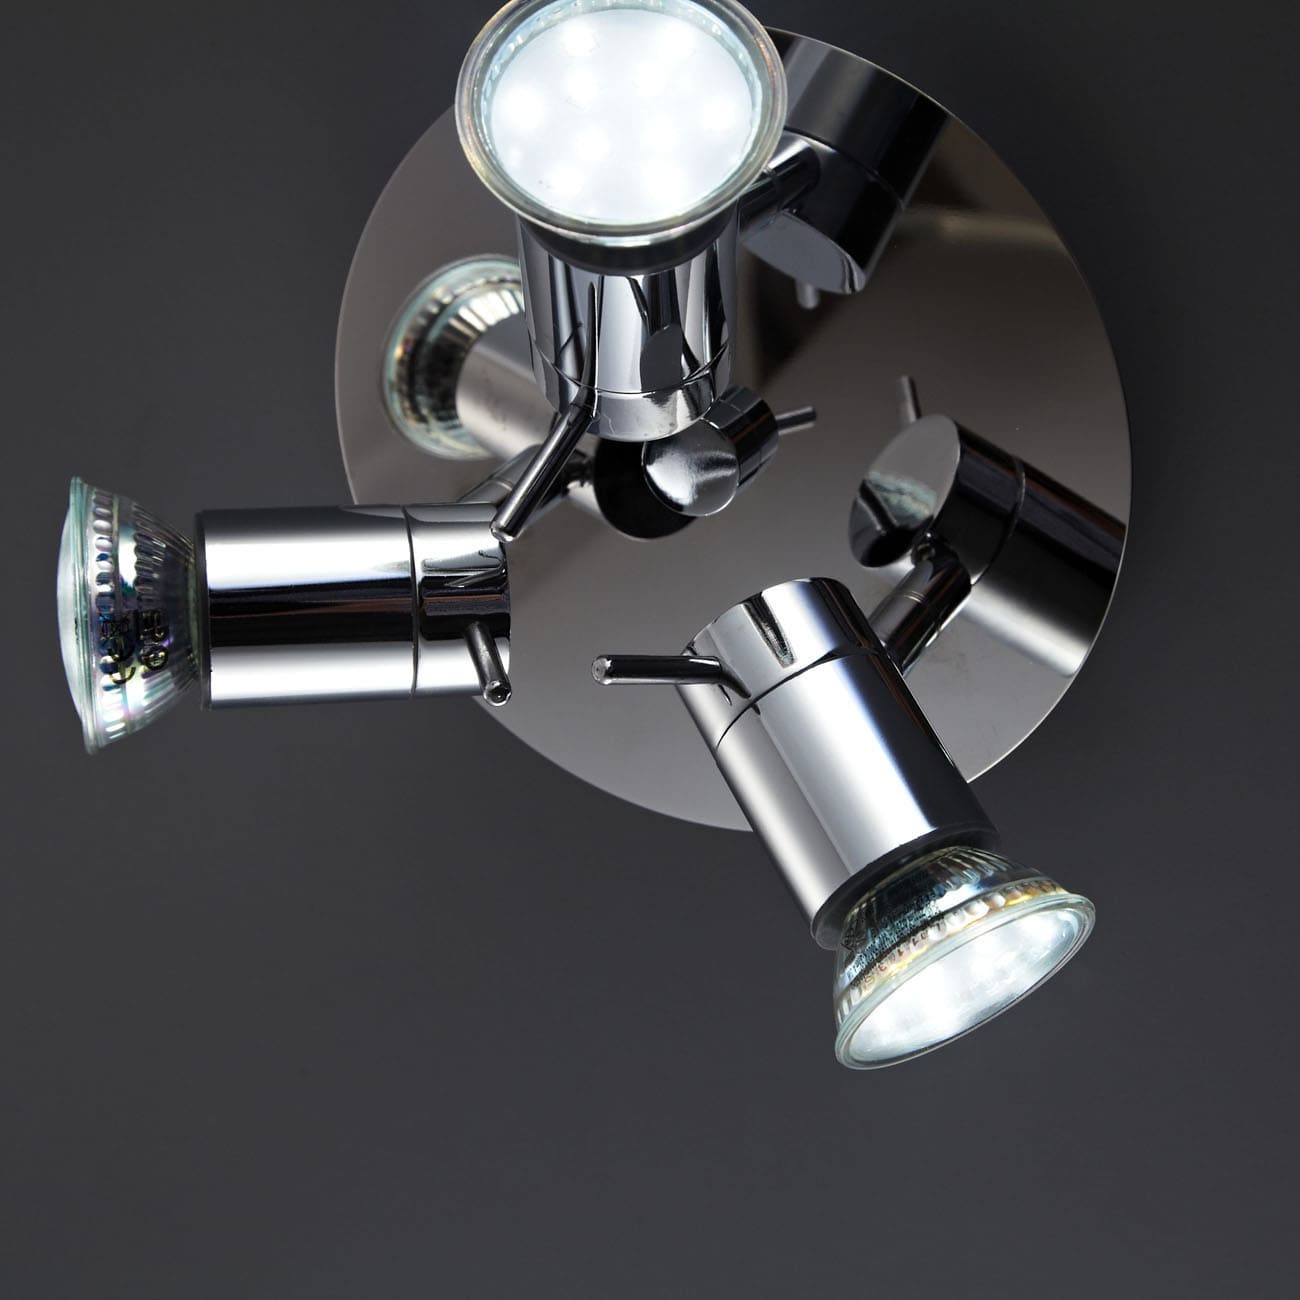 LED Bad-Deckenspot Ø16,5cm - 4-flammig - Badezimmer-Lampe IP44 230V GU10 9W 750lm warmweiß | Chrom - 4